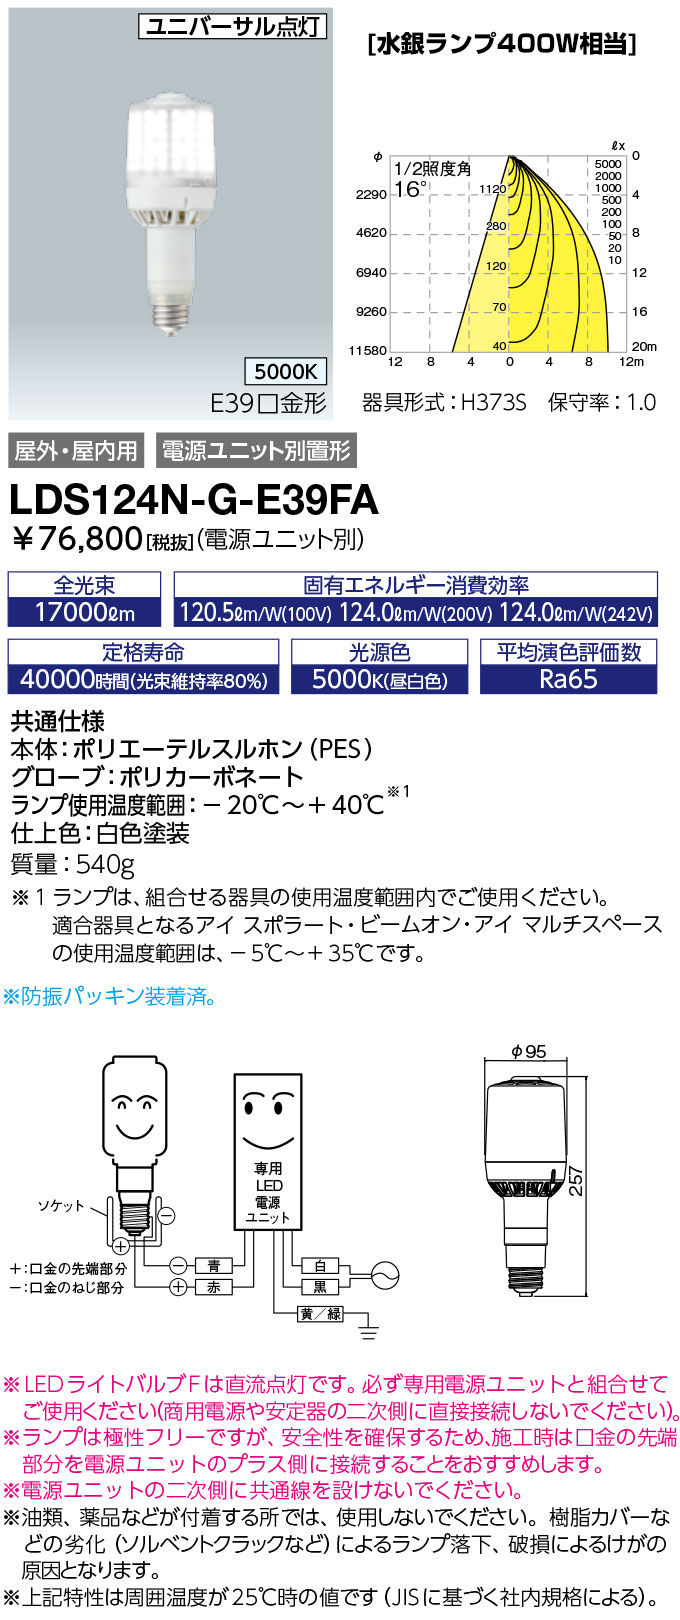 LDS124N-G-E39FA